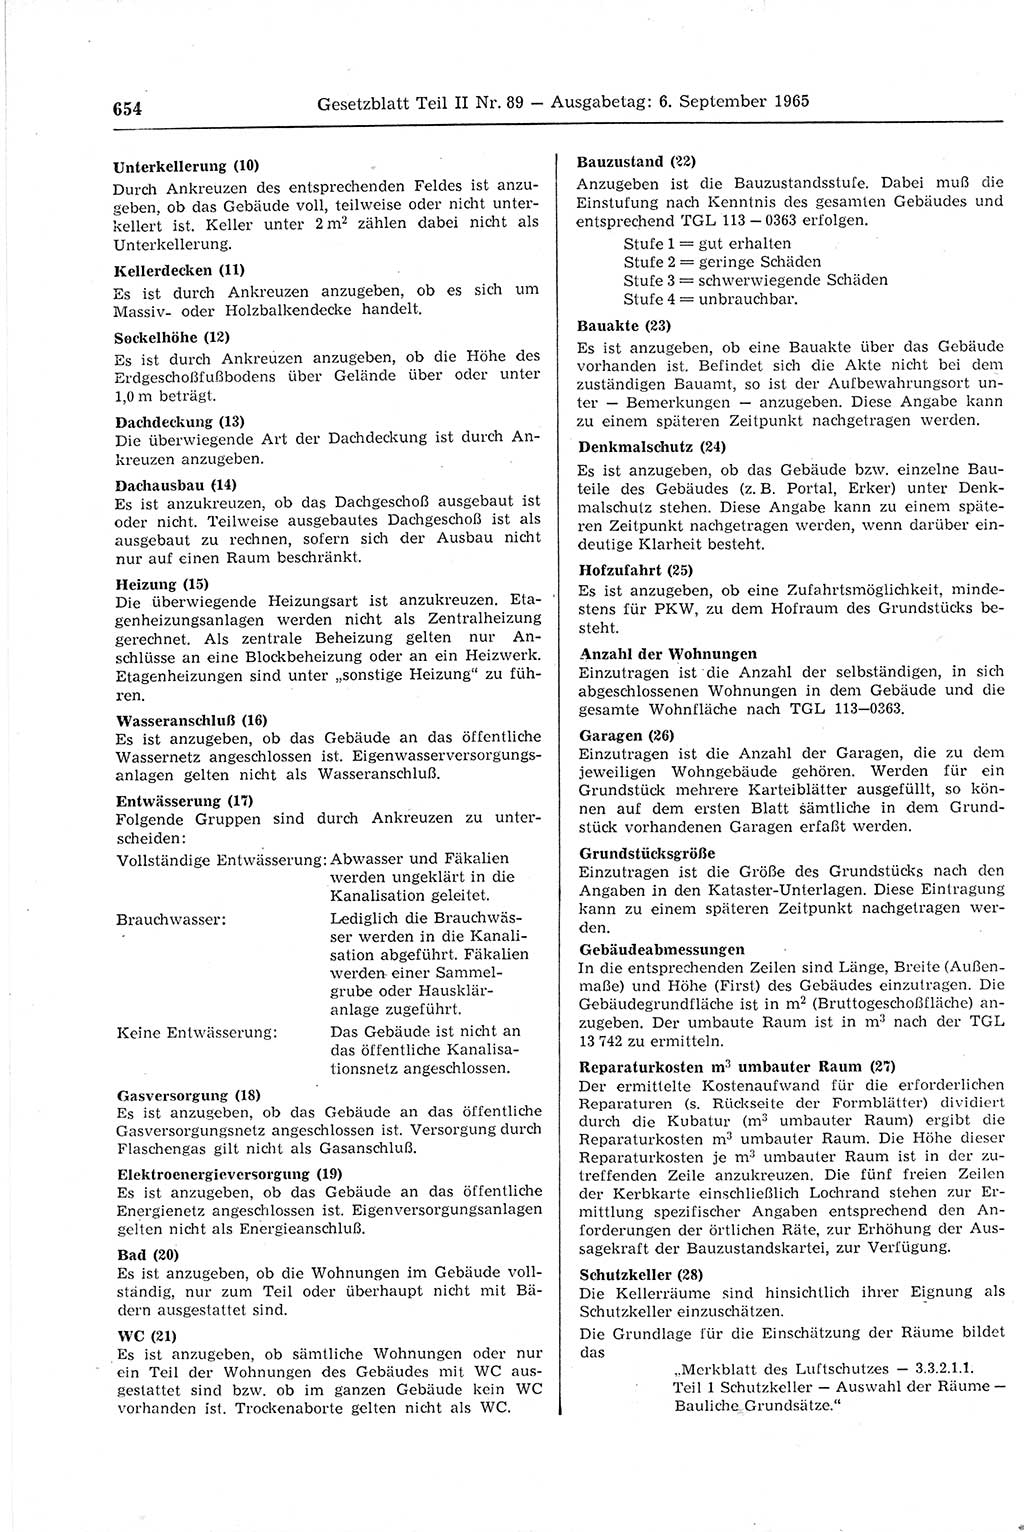 Gesetzblatt (GBl.) der Deutschen Demokratischen Republik (DDR) Teil ⅠⅠ 1965, Seite 654 (GBl. DDR ⅠⅠ 1965, S. 654)